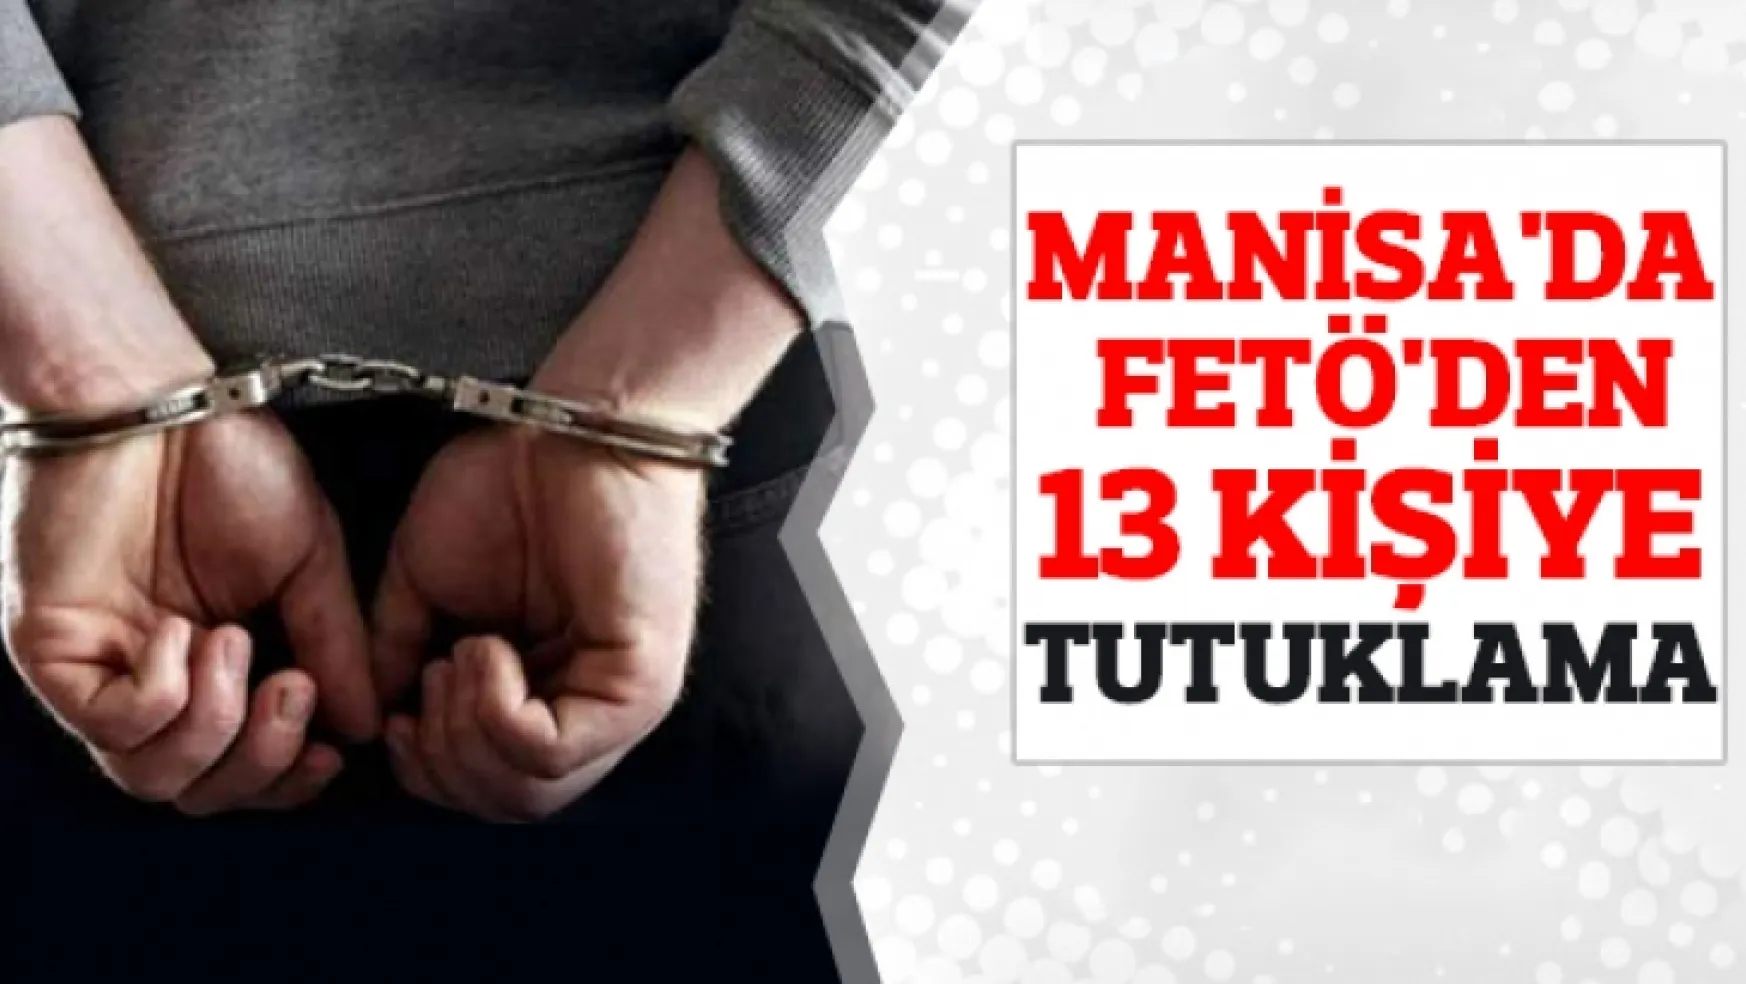 Manisa'da FETÖ'den 13 kişi tutuklandı